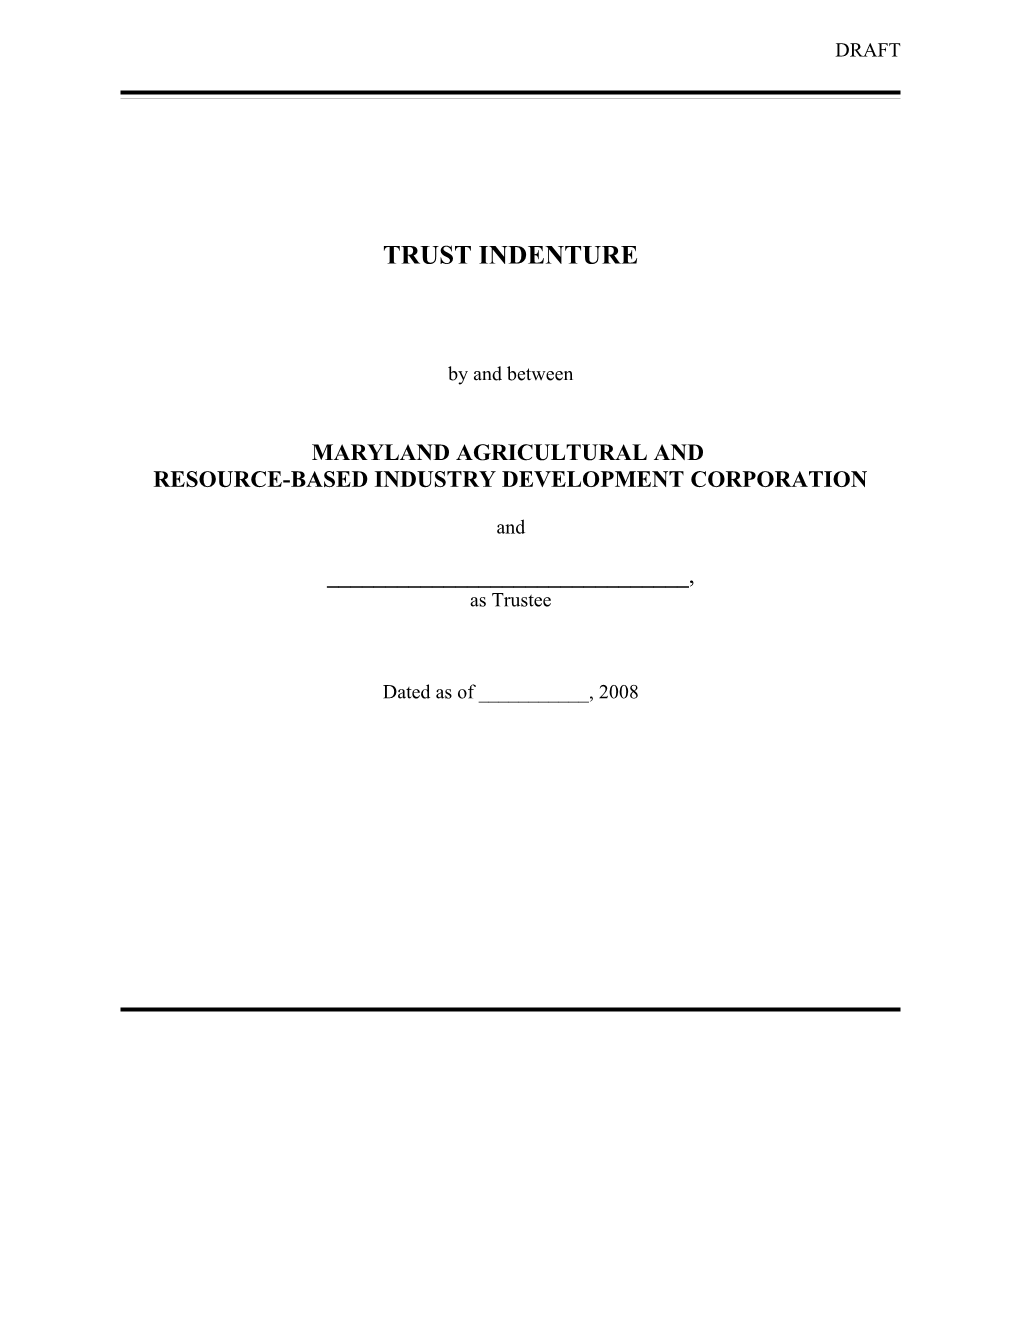 Trust Indenture MARBIDCO (2007) (04038980-4)